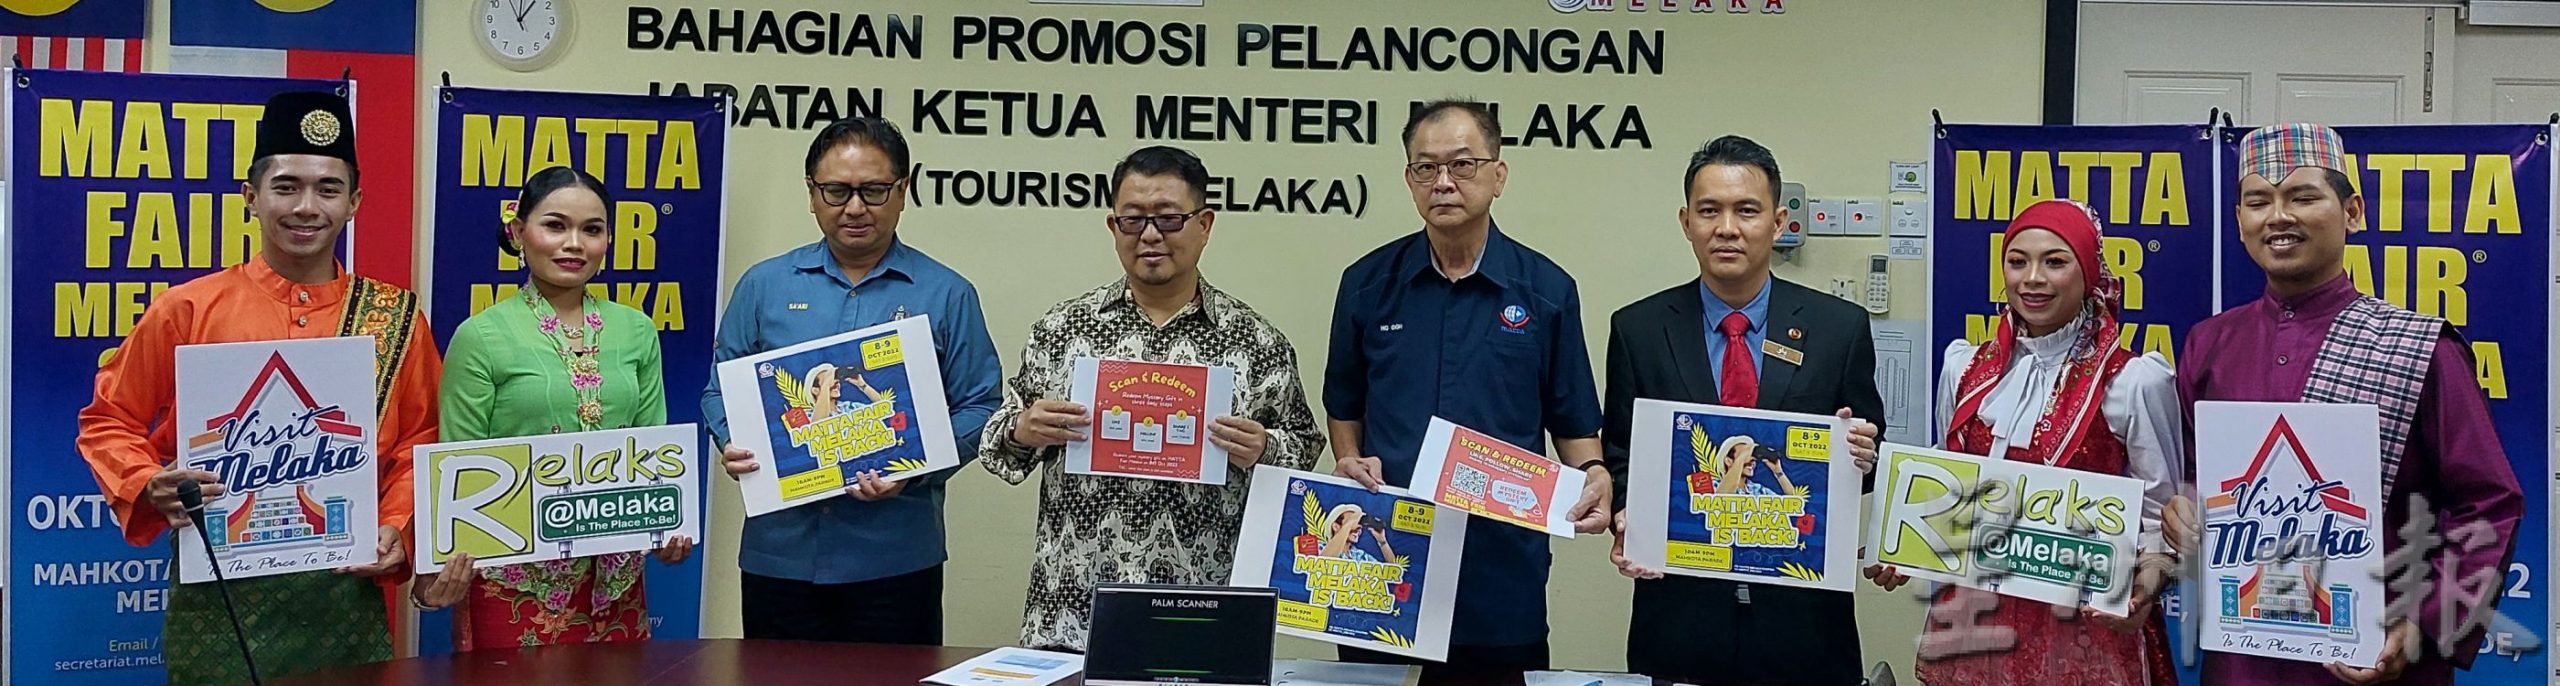 （古城封面主文）马来西亚国际旅游展预计活动可吸引2万人出席